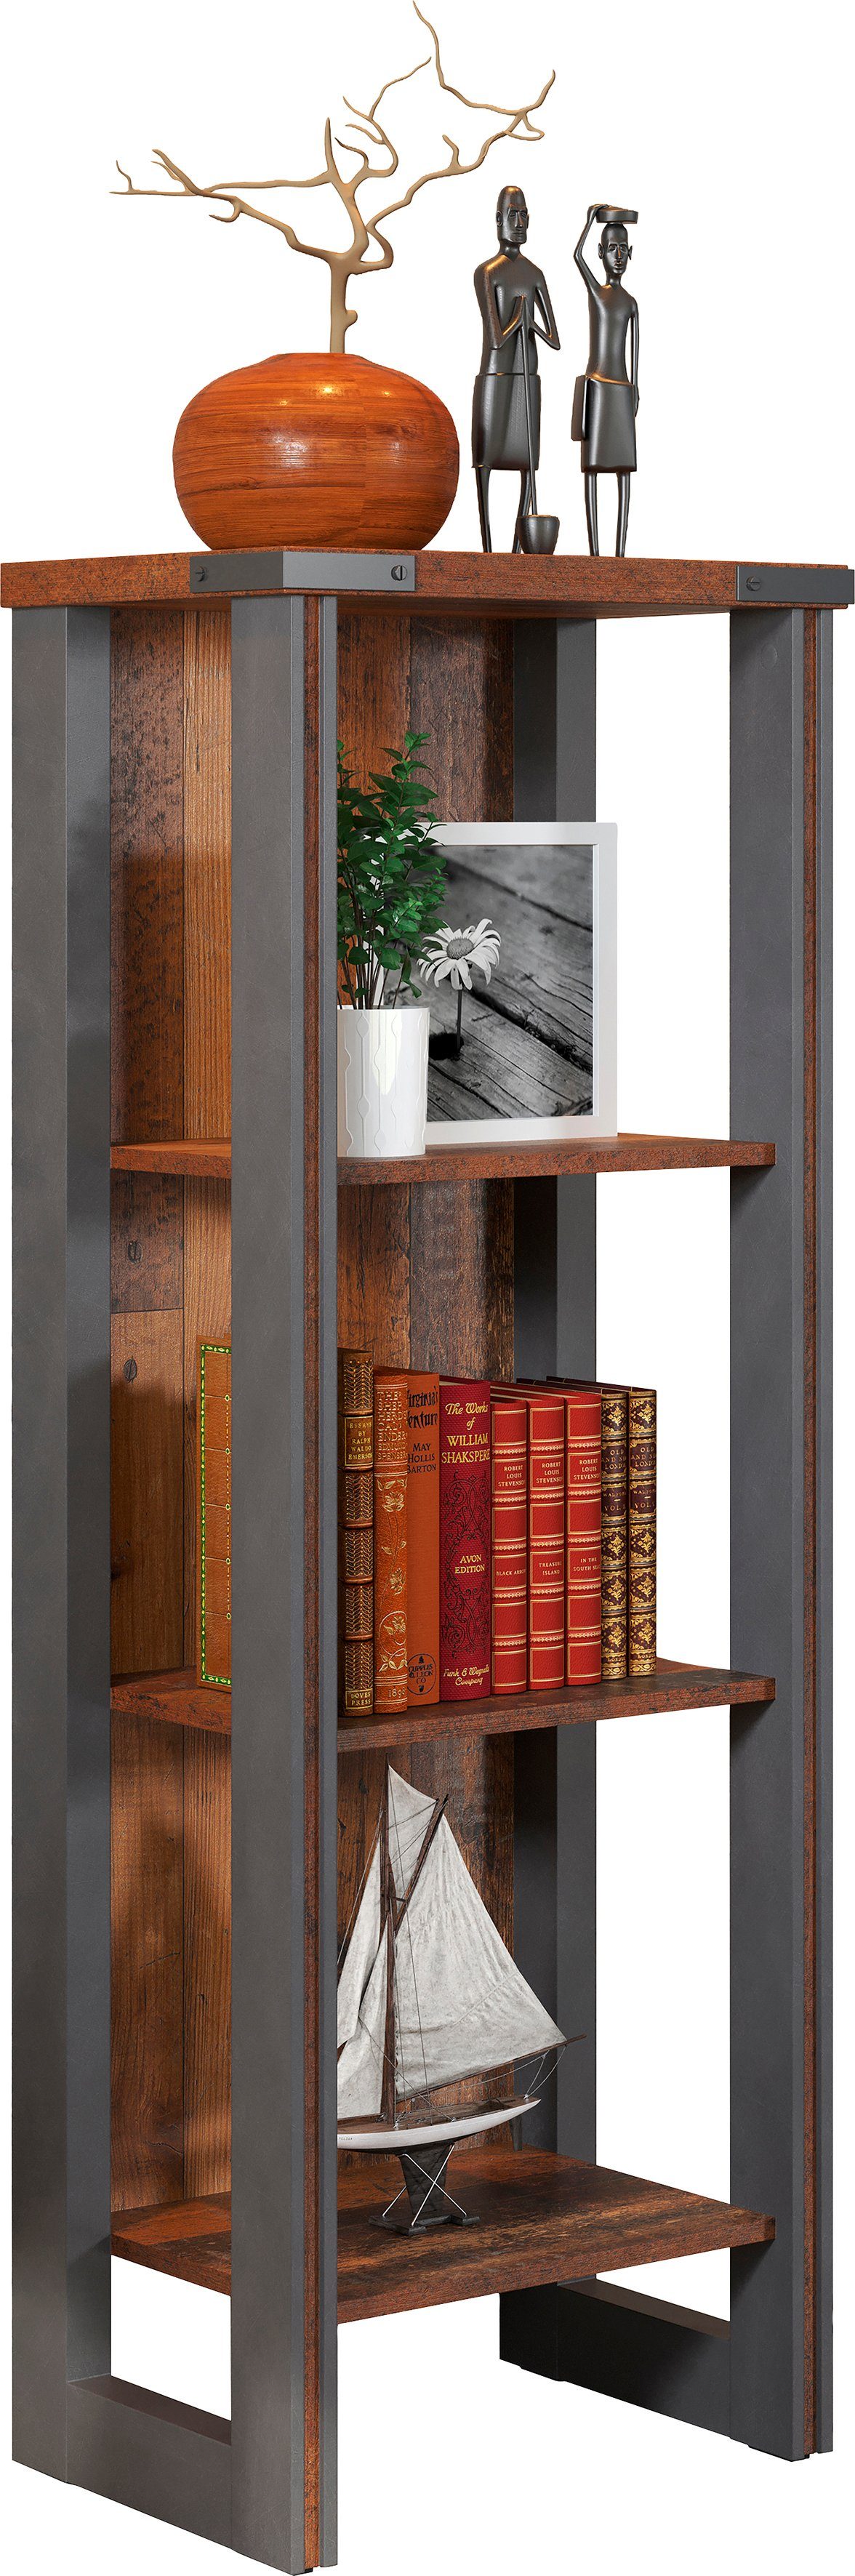 Ventileren Visser Scorch trendteam Ordnerrek Prime Opvallend design, boekenkast, multifunctionele  kast in de online shop | OTTO